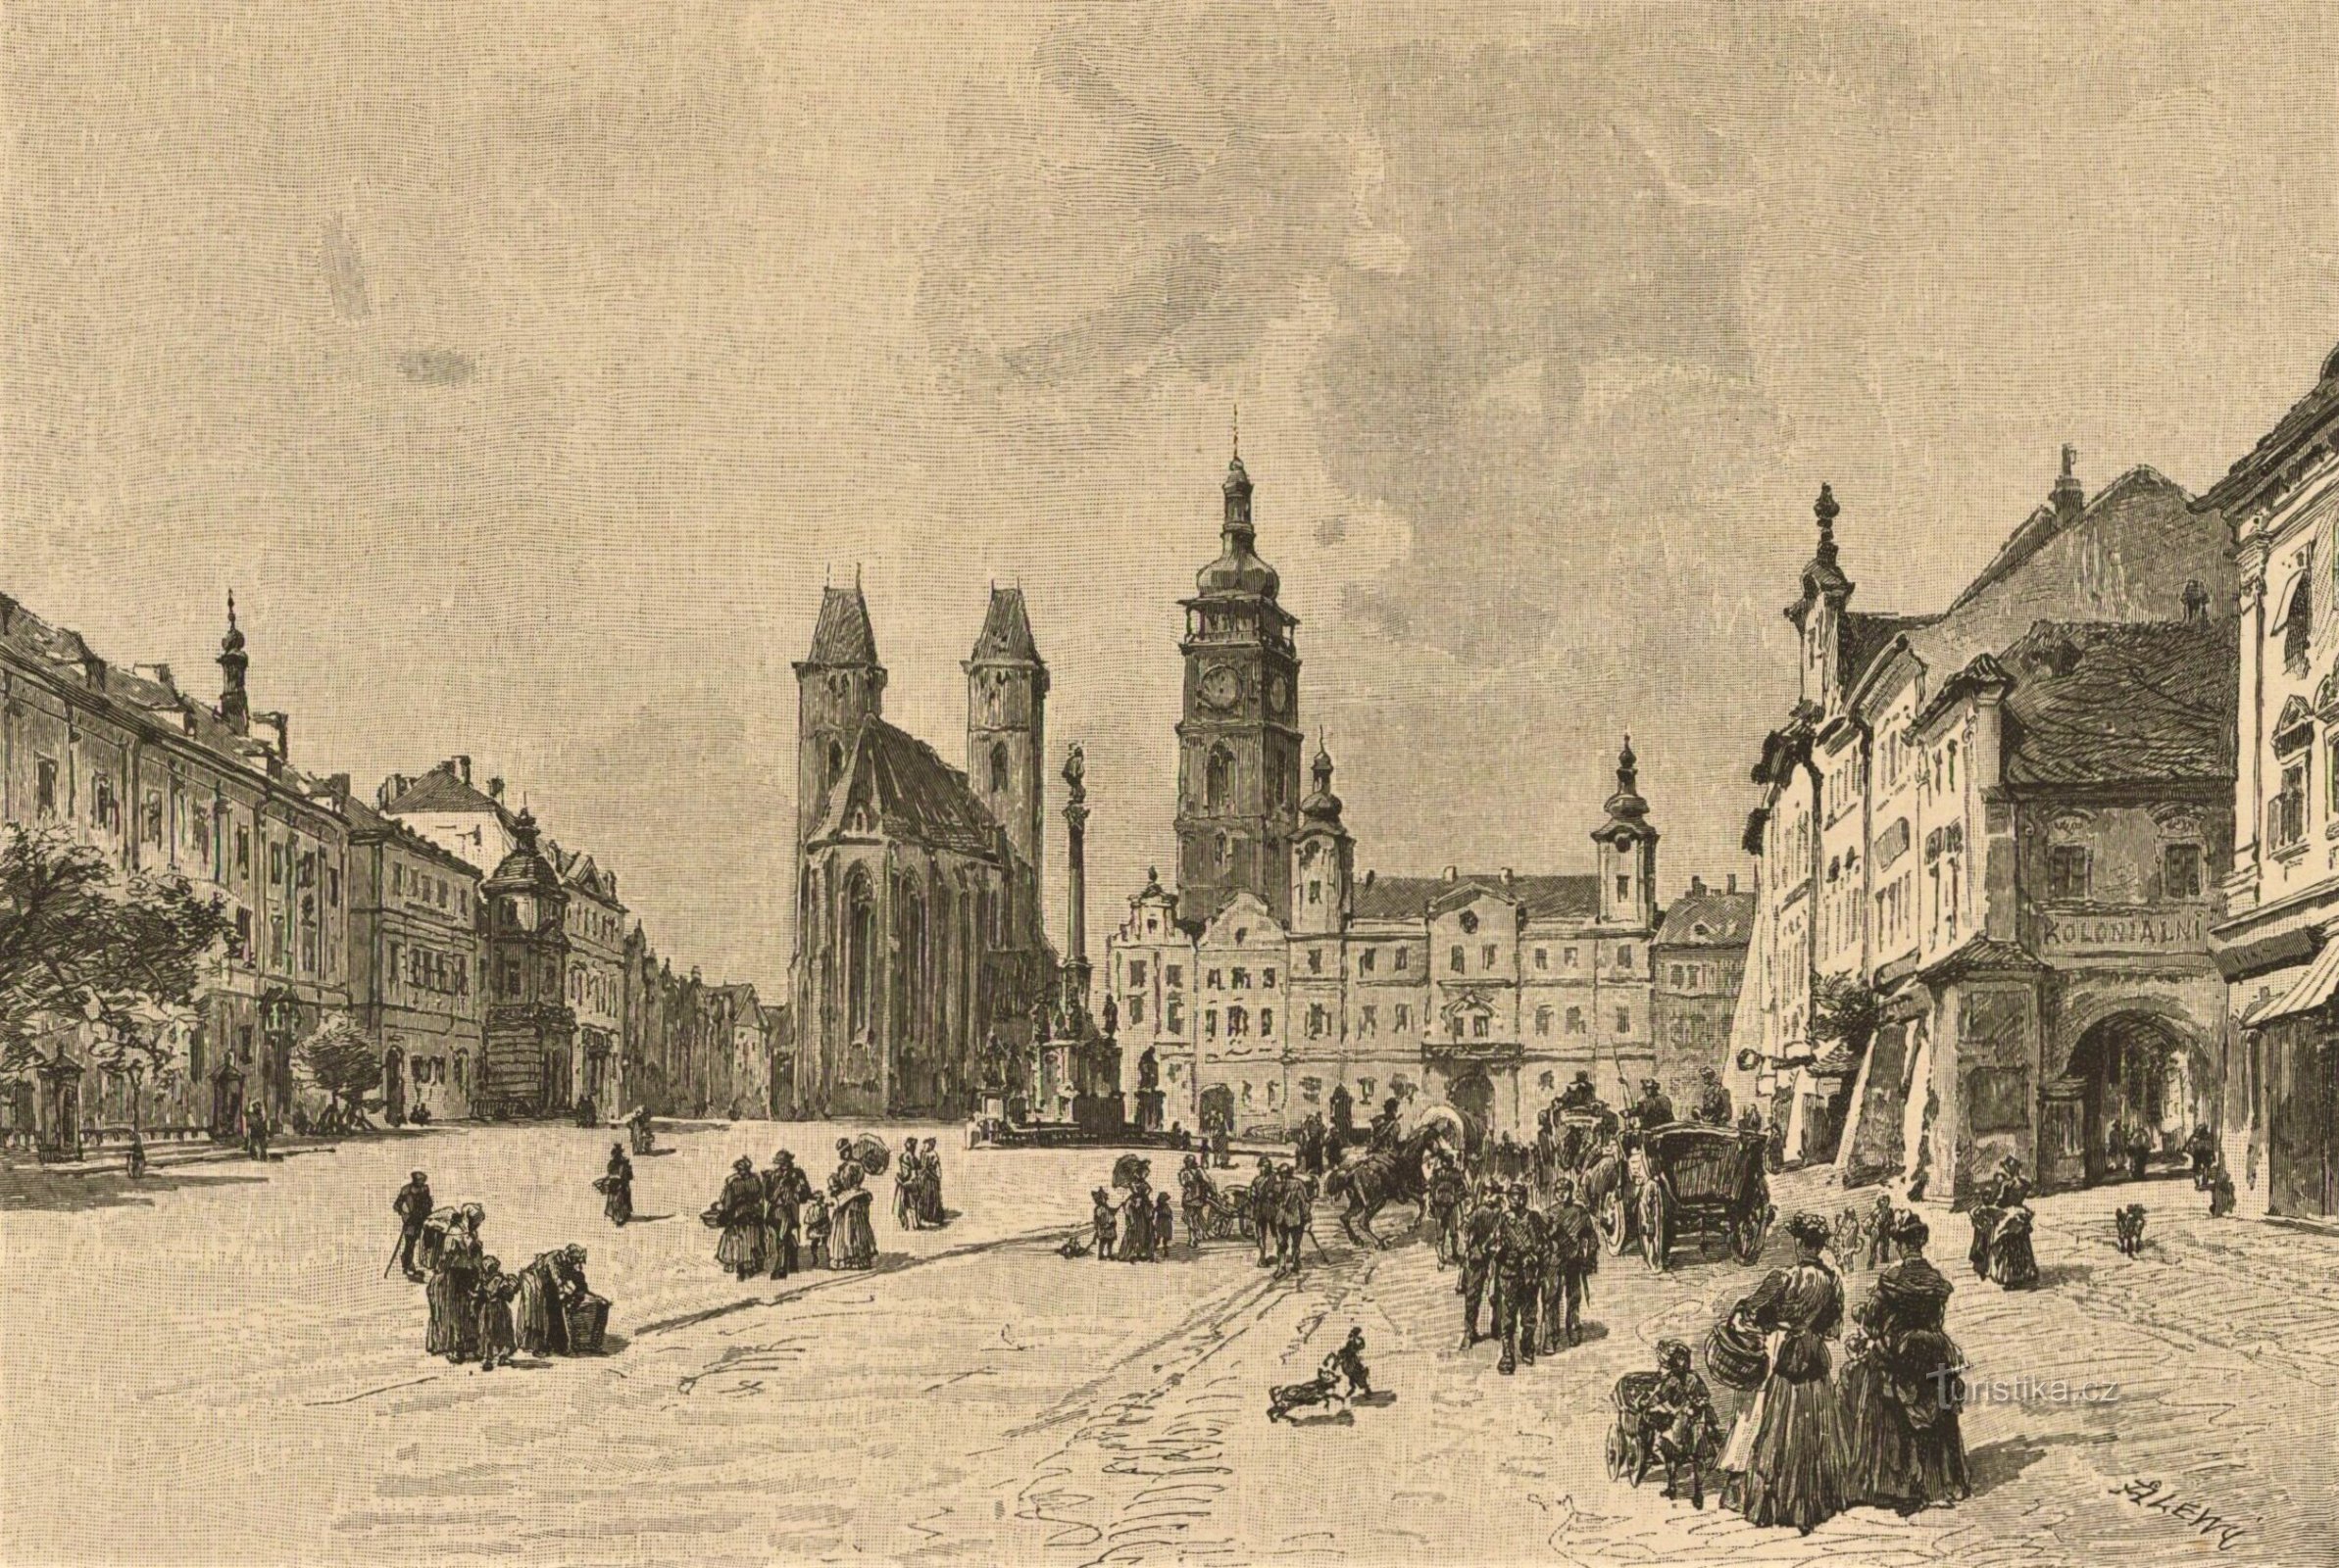 Hradec Králové ve 2. polovině 19. století